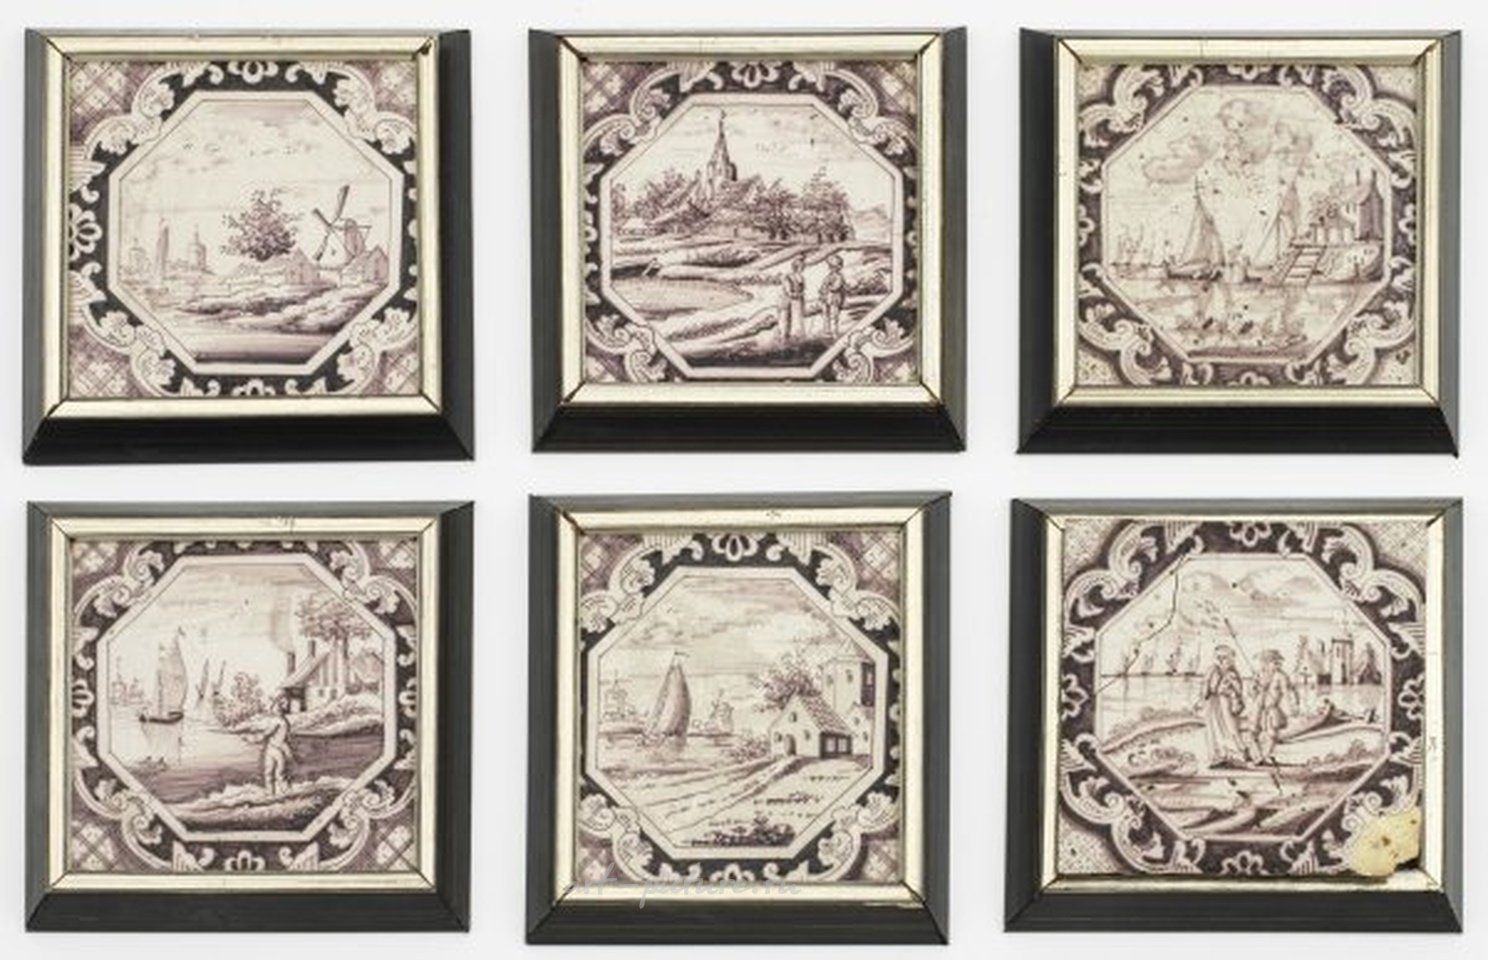 Голландские фаянсовые плитки с ландшафтной декорацией в восьмиугольной форме из 18-19 века